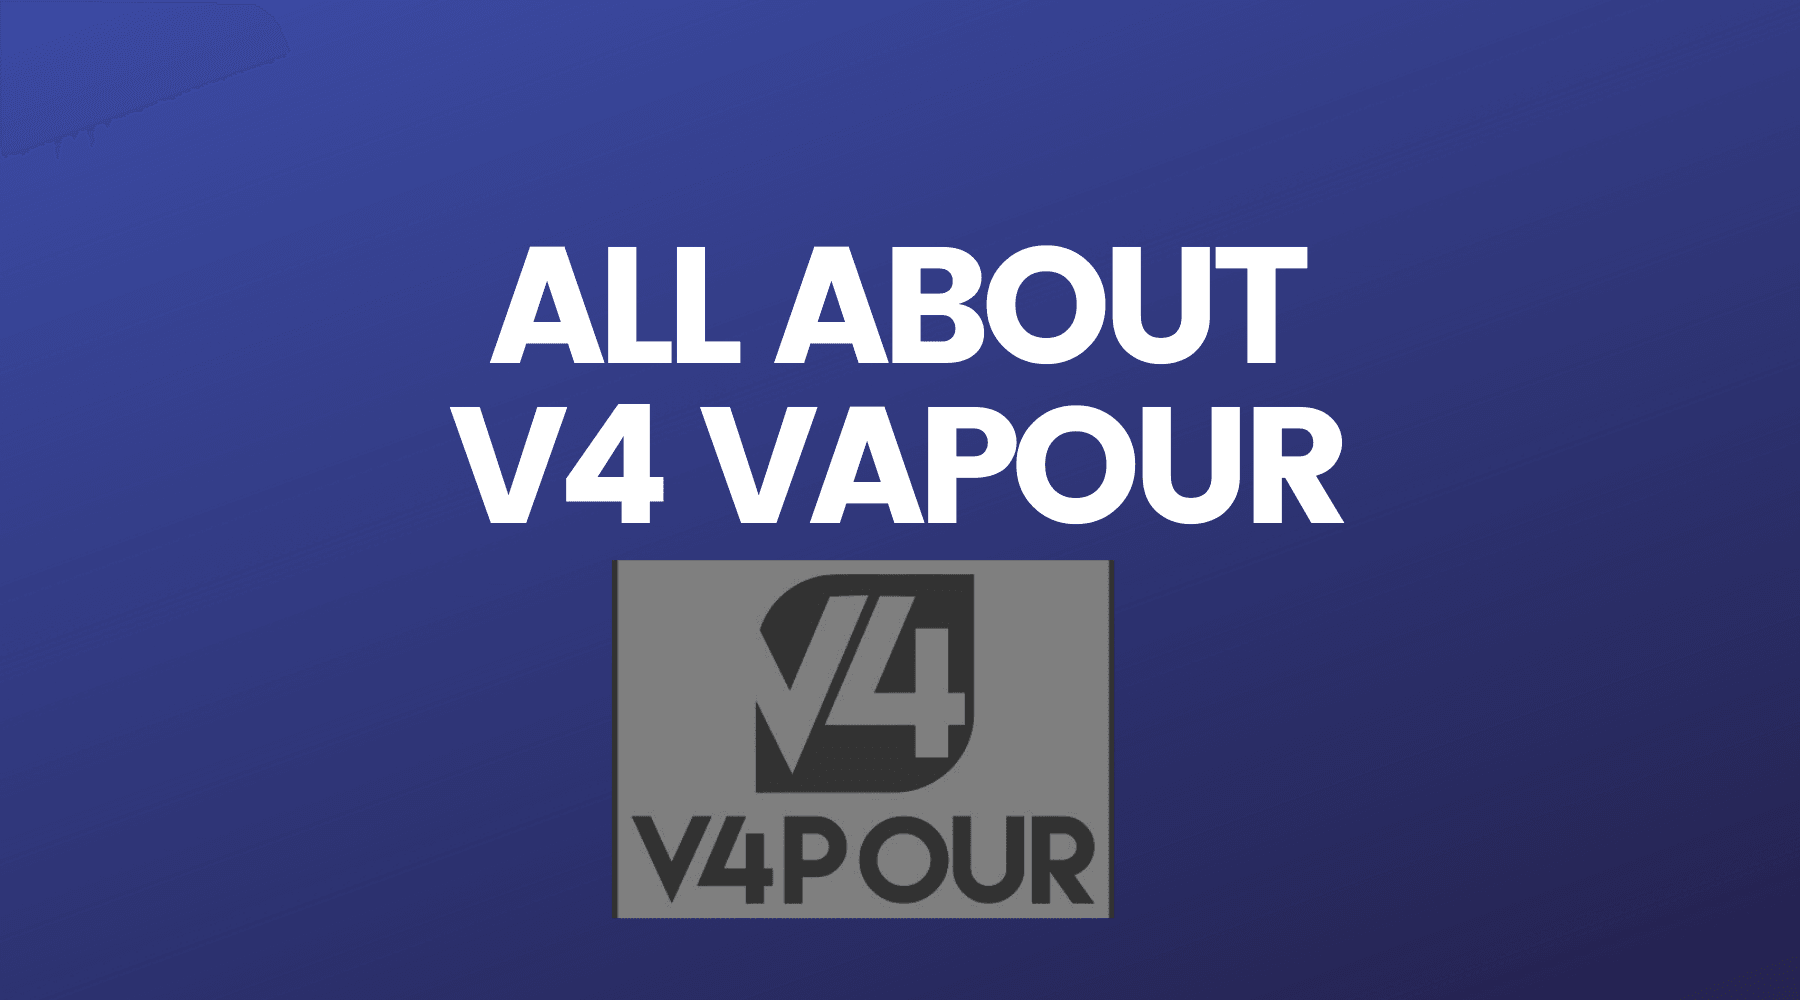 All About V4 Vapour Vape Juices - Vape Direct